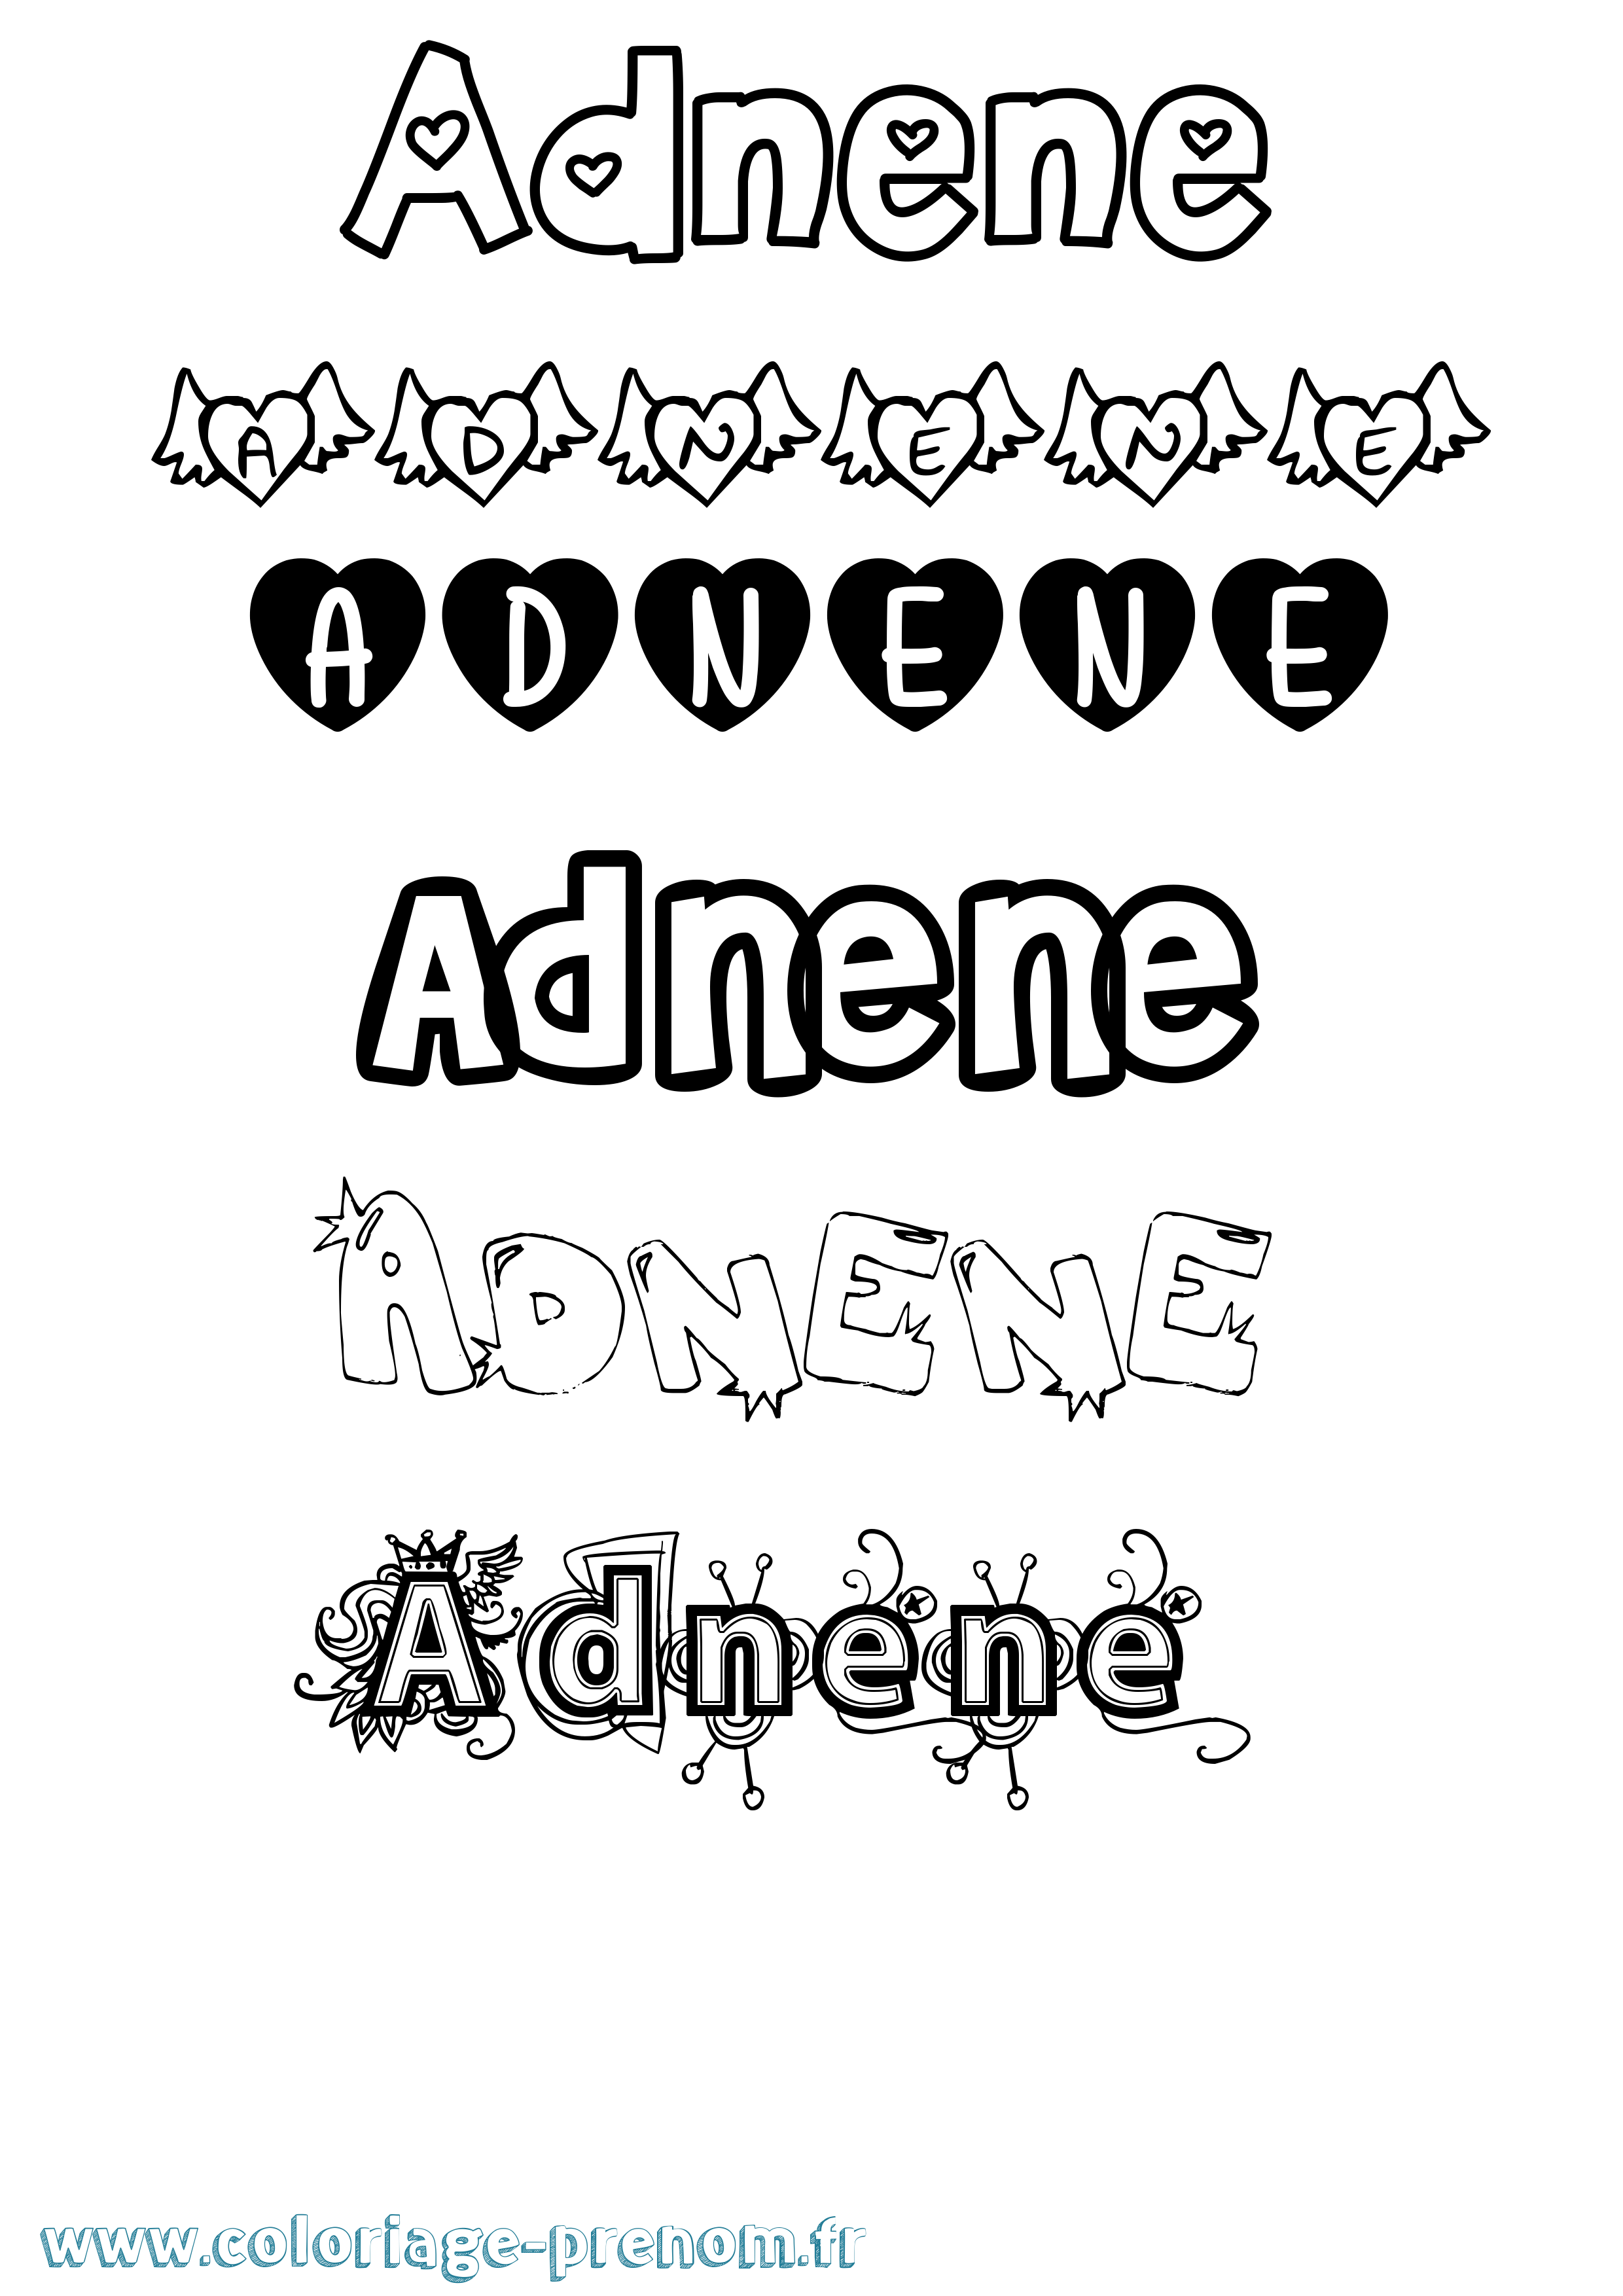 Coloriage prénom Adnene Girly